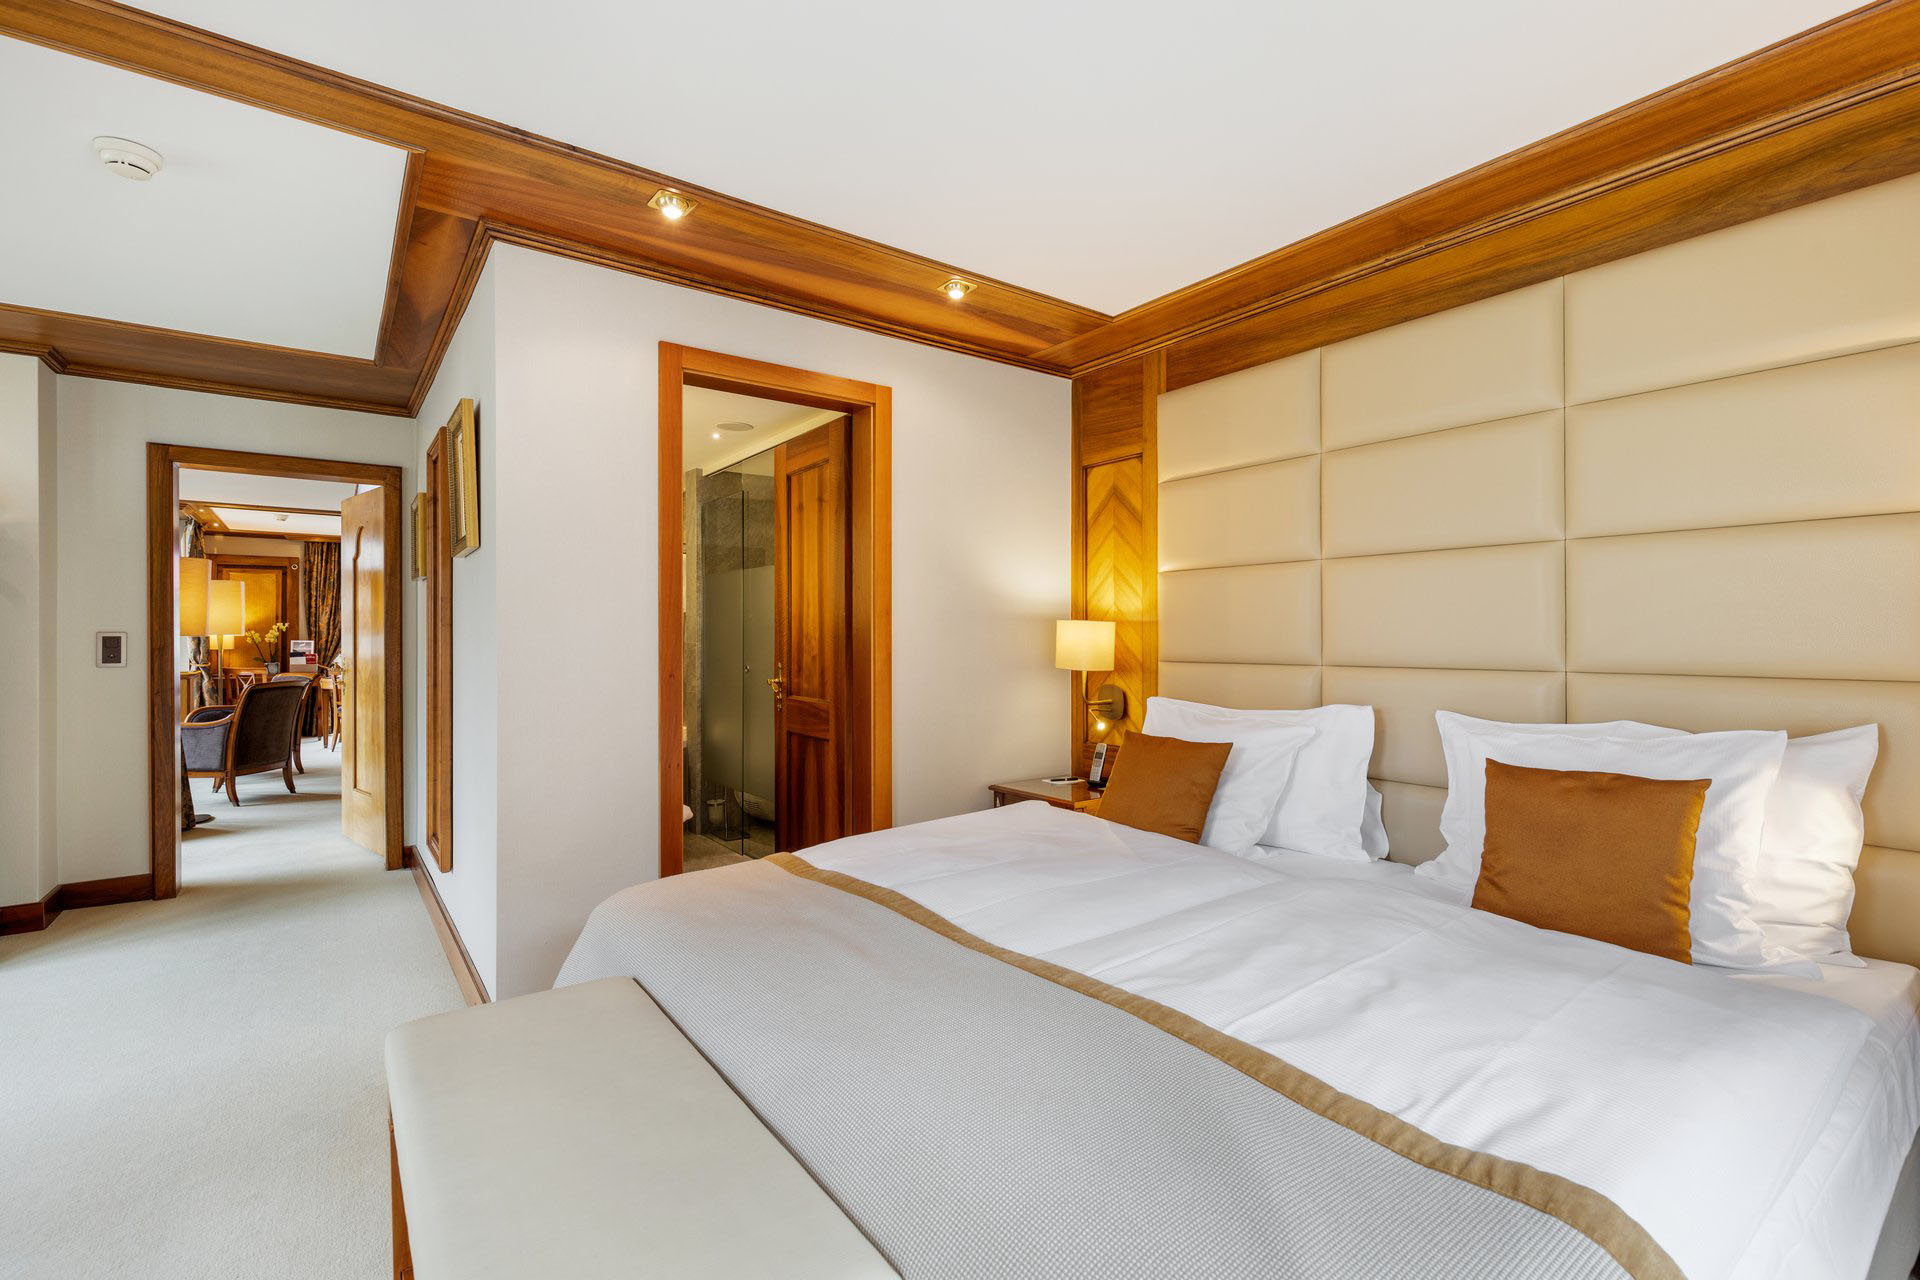 Grand Suite Matterhorn Bedroom - Grand Hotel Zermatterhof